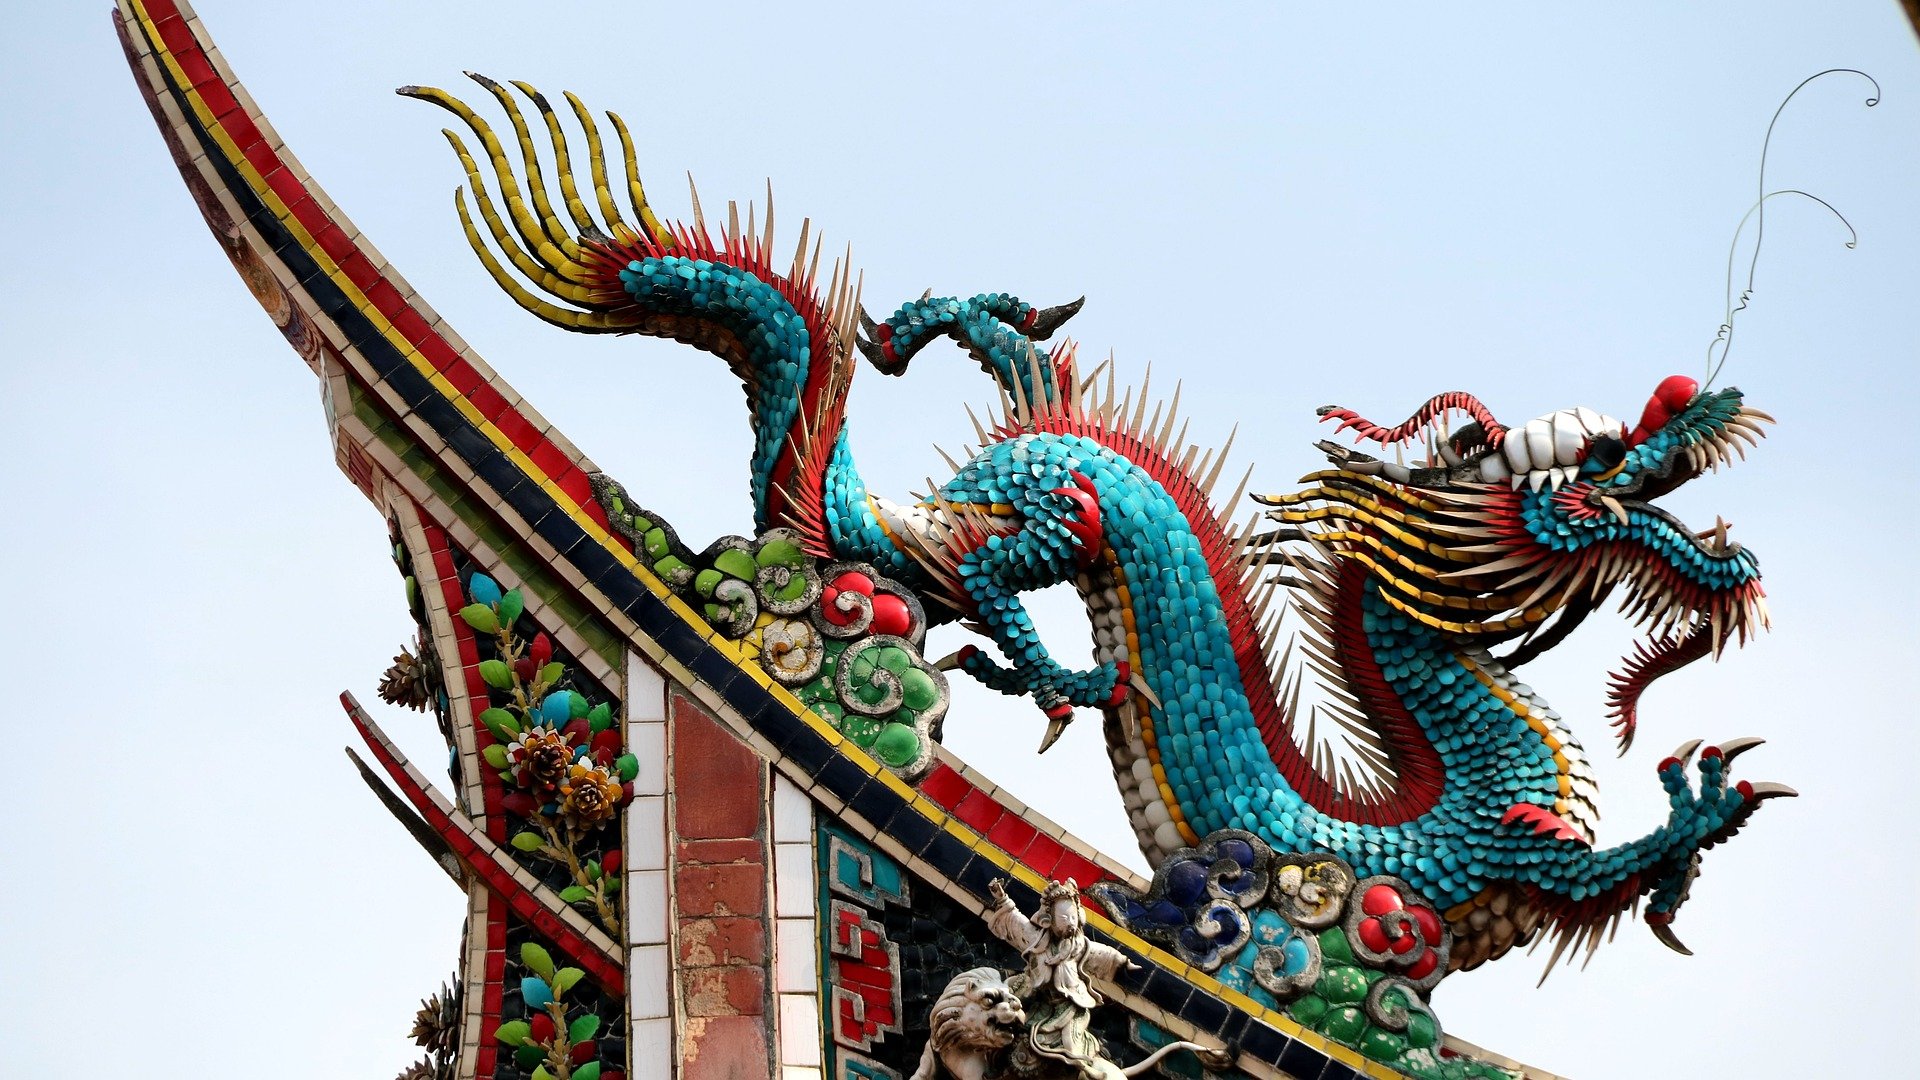 Draghi Cinesi: il Drago Oceanico nel Feng Shui